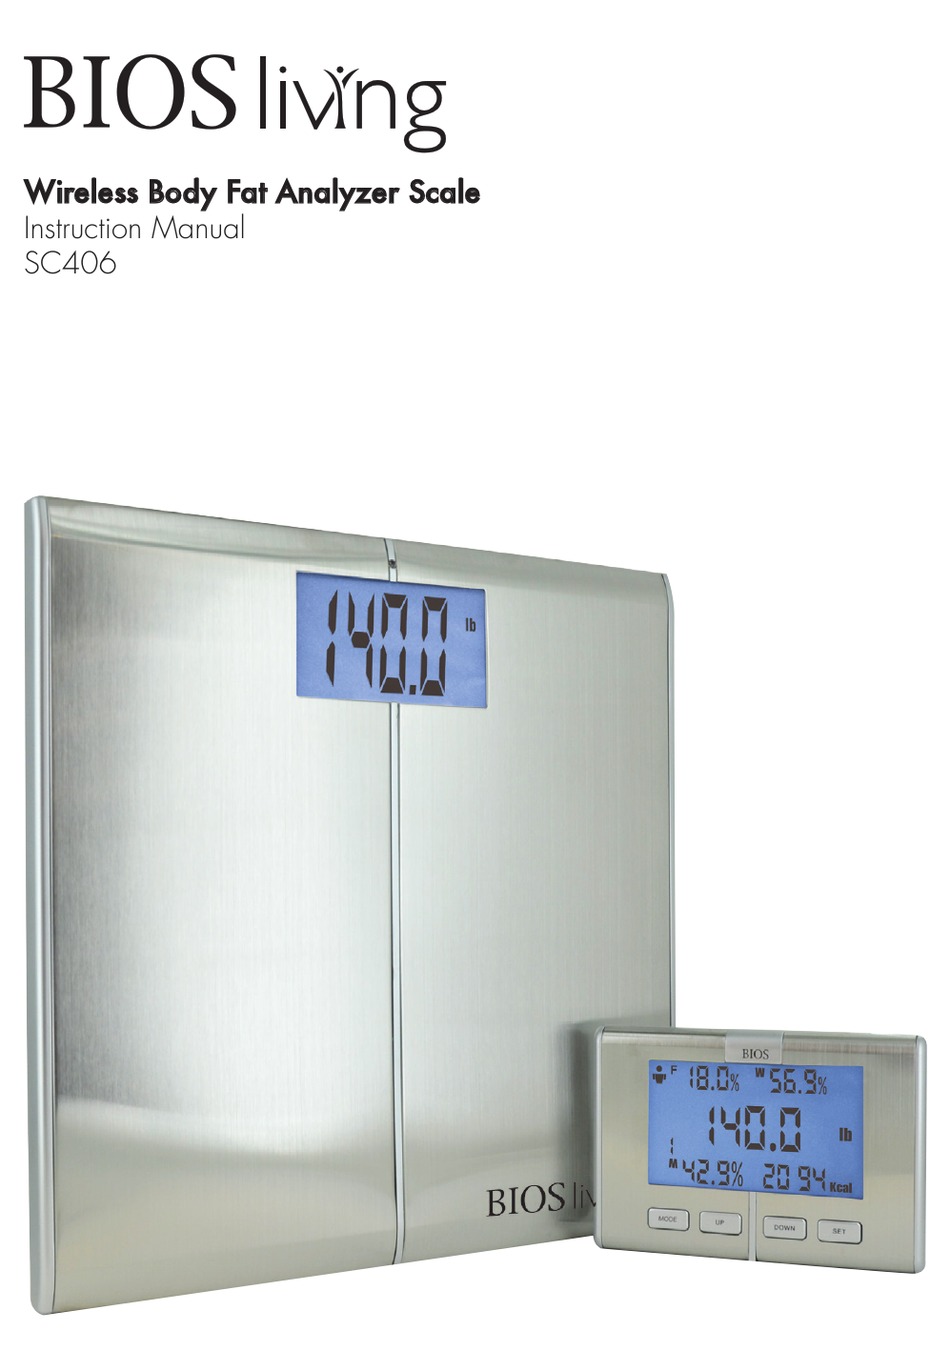 BIOS Living Digital Analog Bath Scale